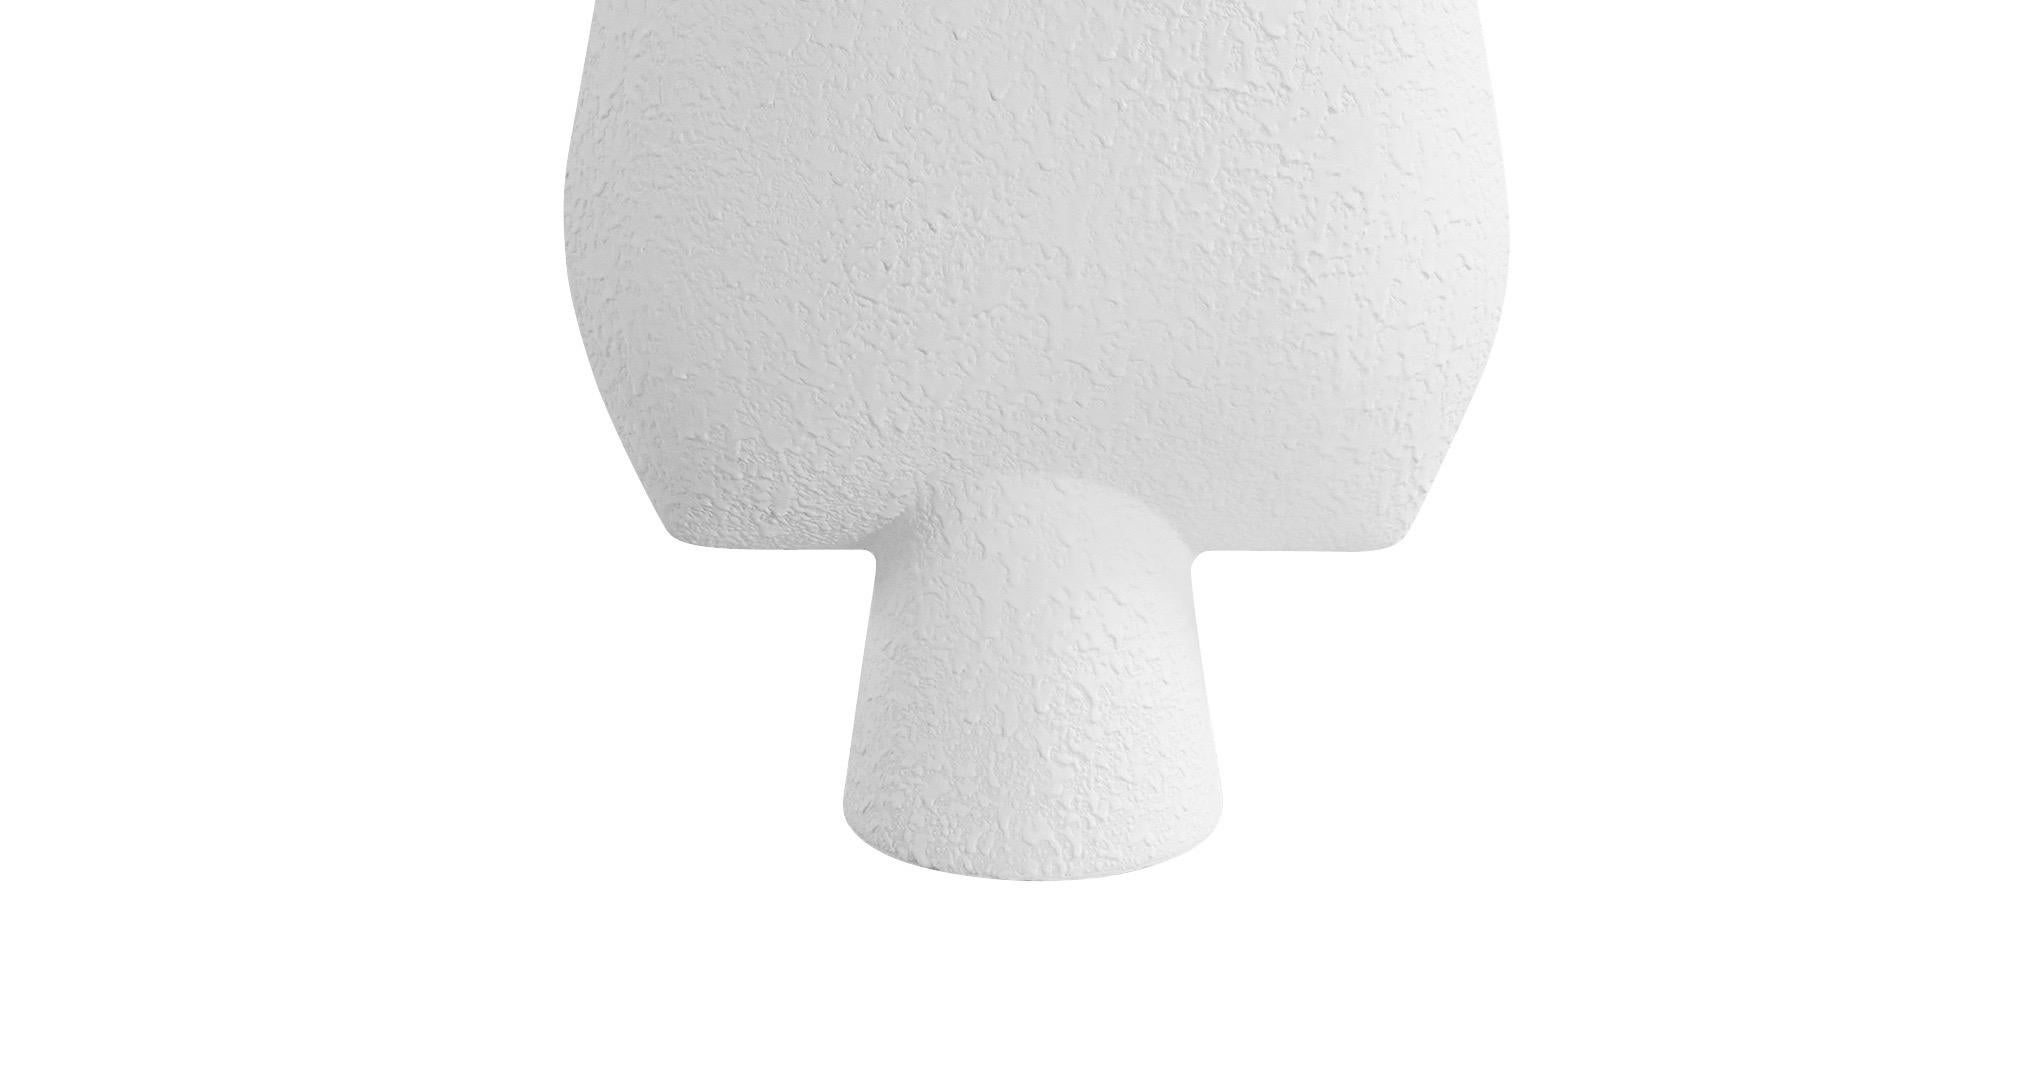 Zeitgenössische dänische Vase aus weißer Keramik mit Struktur. 
Arrow-förmiges Oberteil mit röhrenförmigem Sockel.
Auch in mattem Grau erhältlich S5606.
Zwei davon sind erhältlich und werden einzeln verkauft.

 